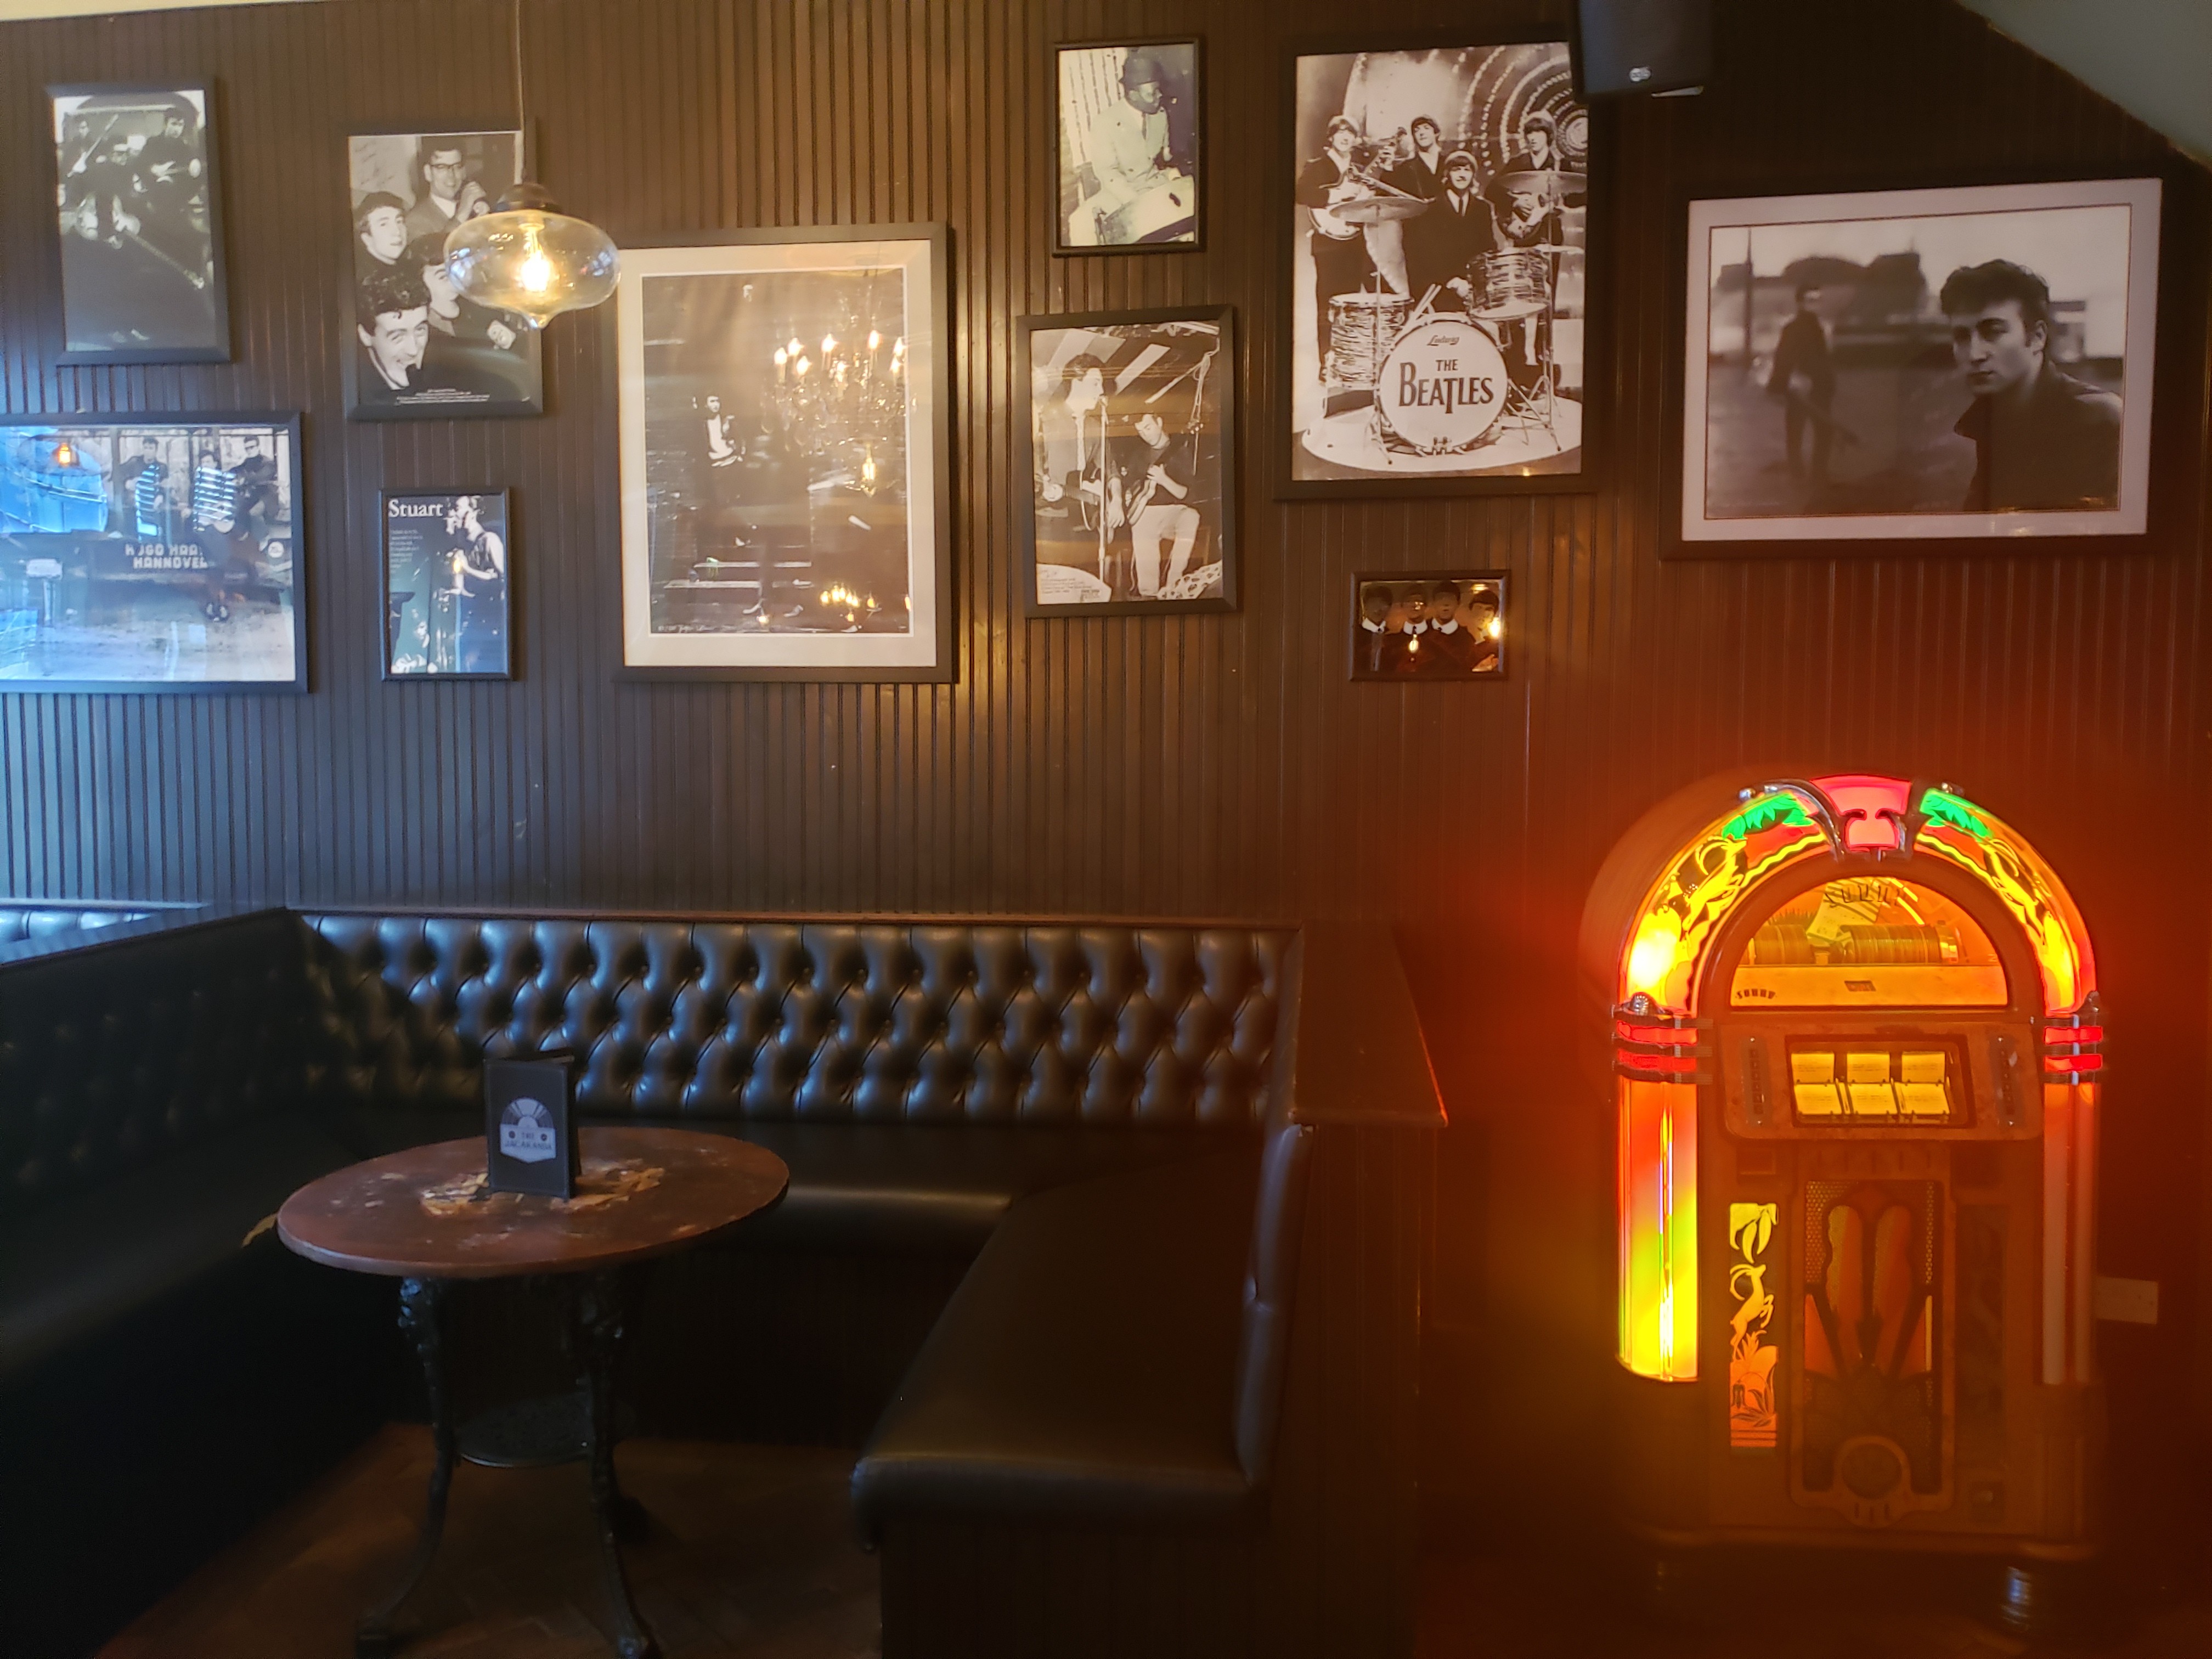 Jacaranda oferece drinks, café, loja de vinil, jukeboxes e música ao vivo no porão - o mesmo onde Os Beatles ensaiavam em suas primeiras formações (Foto: Danilo Saraiva)